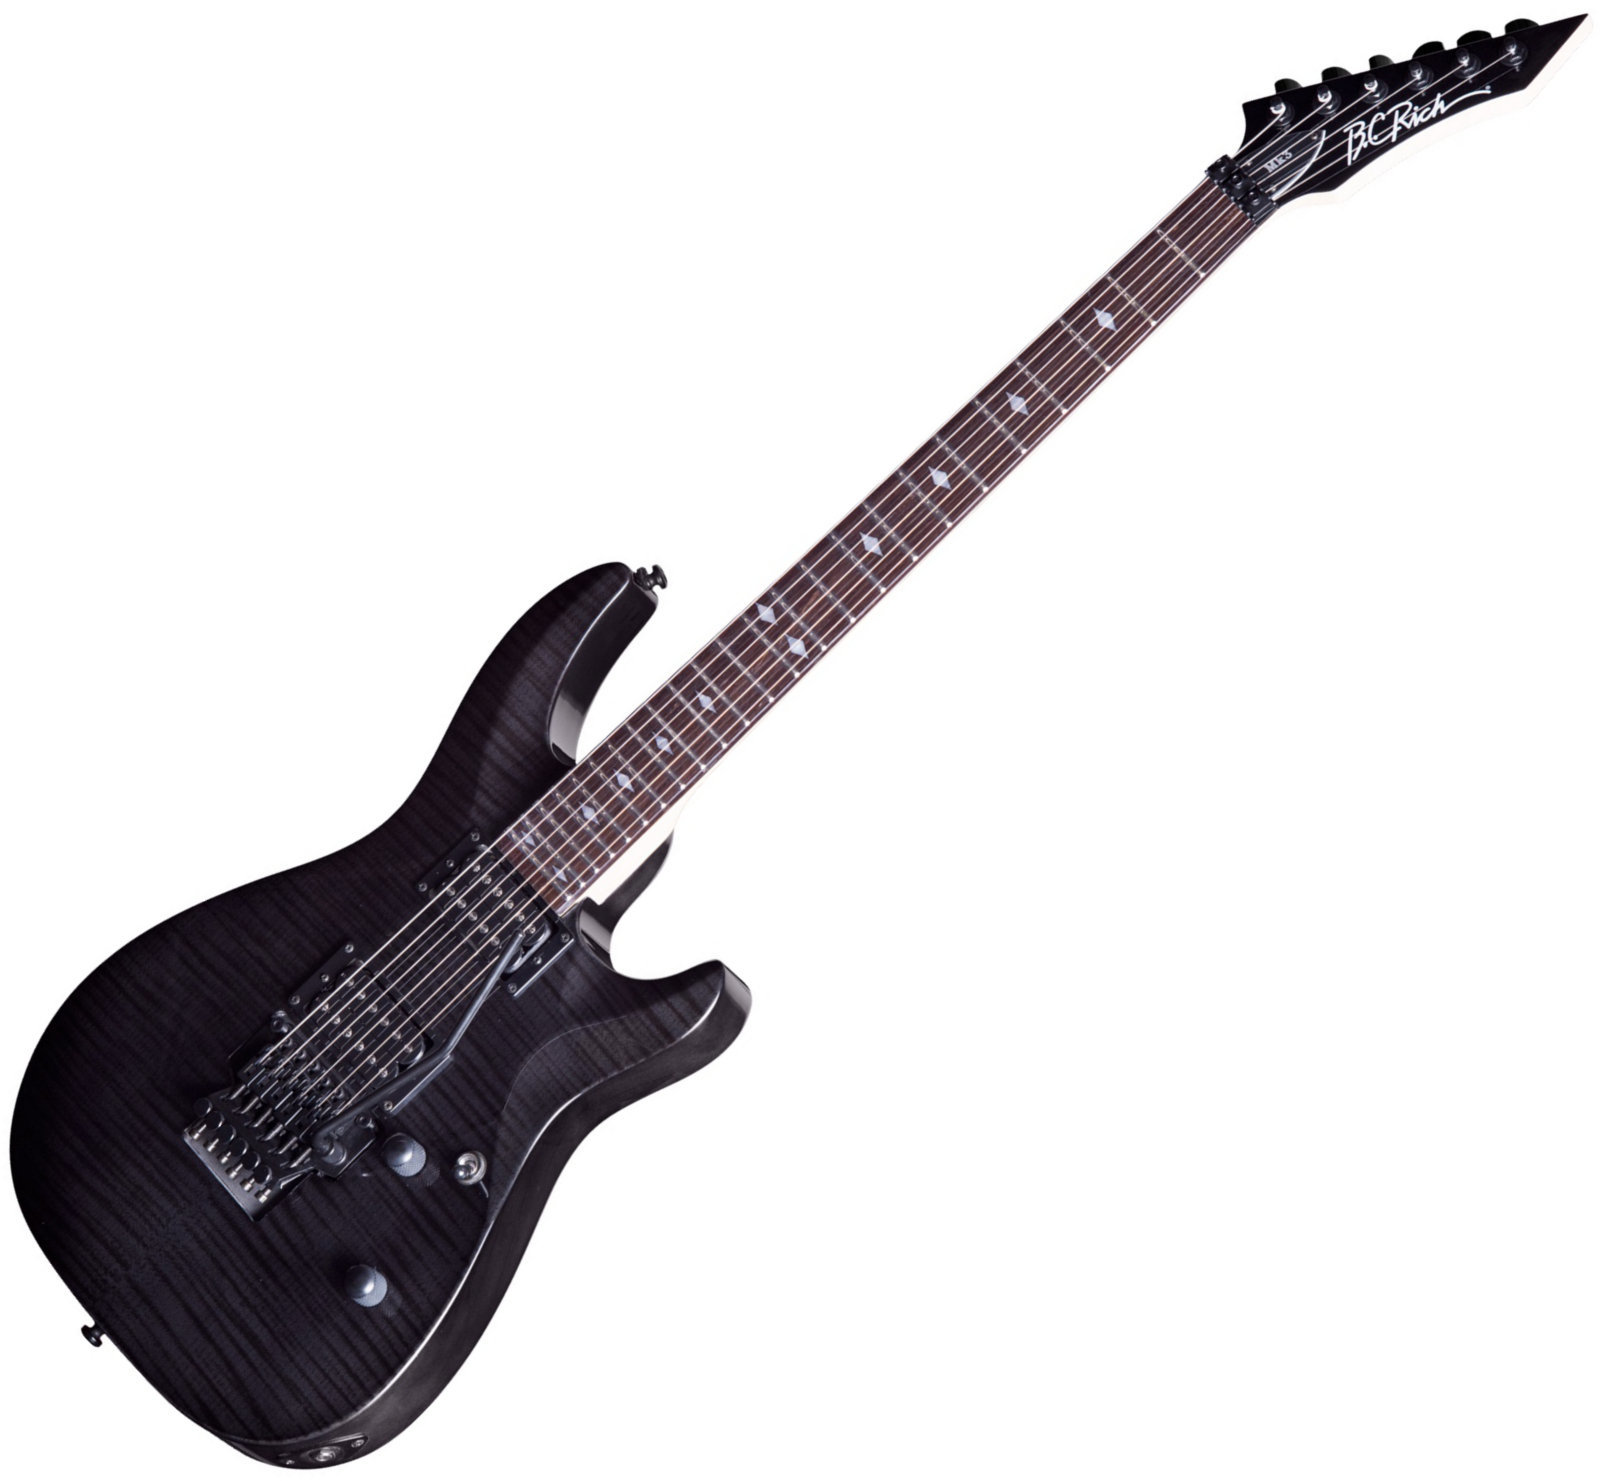 Gitara elektryczna BC RICH MK3 Villain Transparent Black